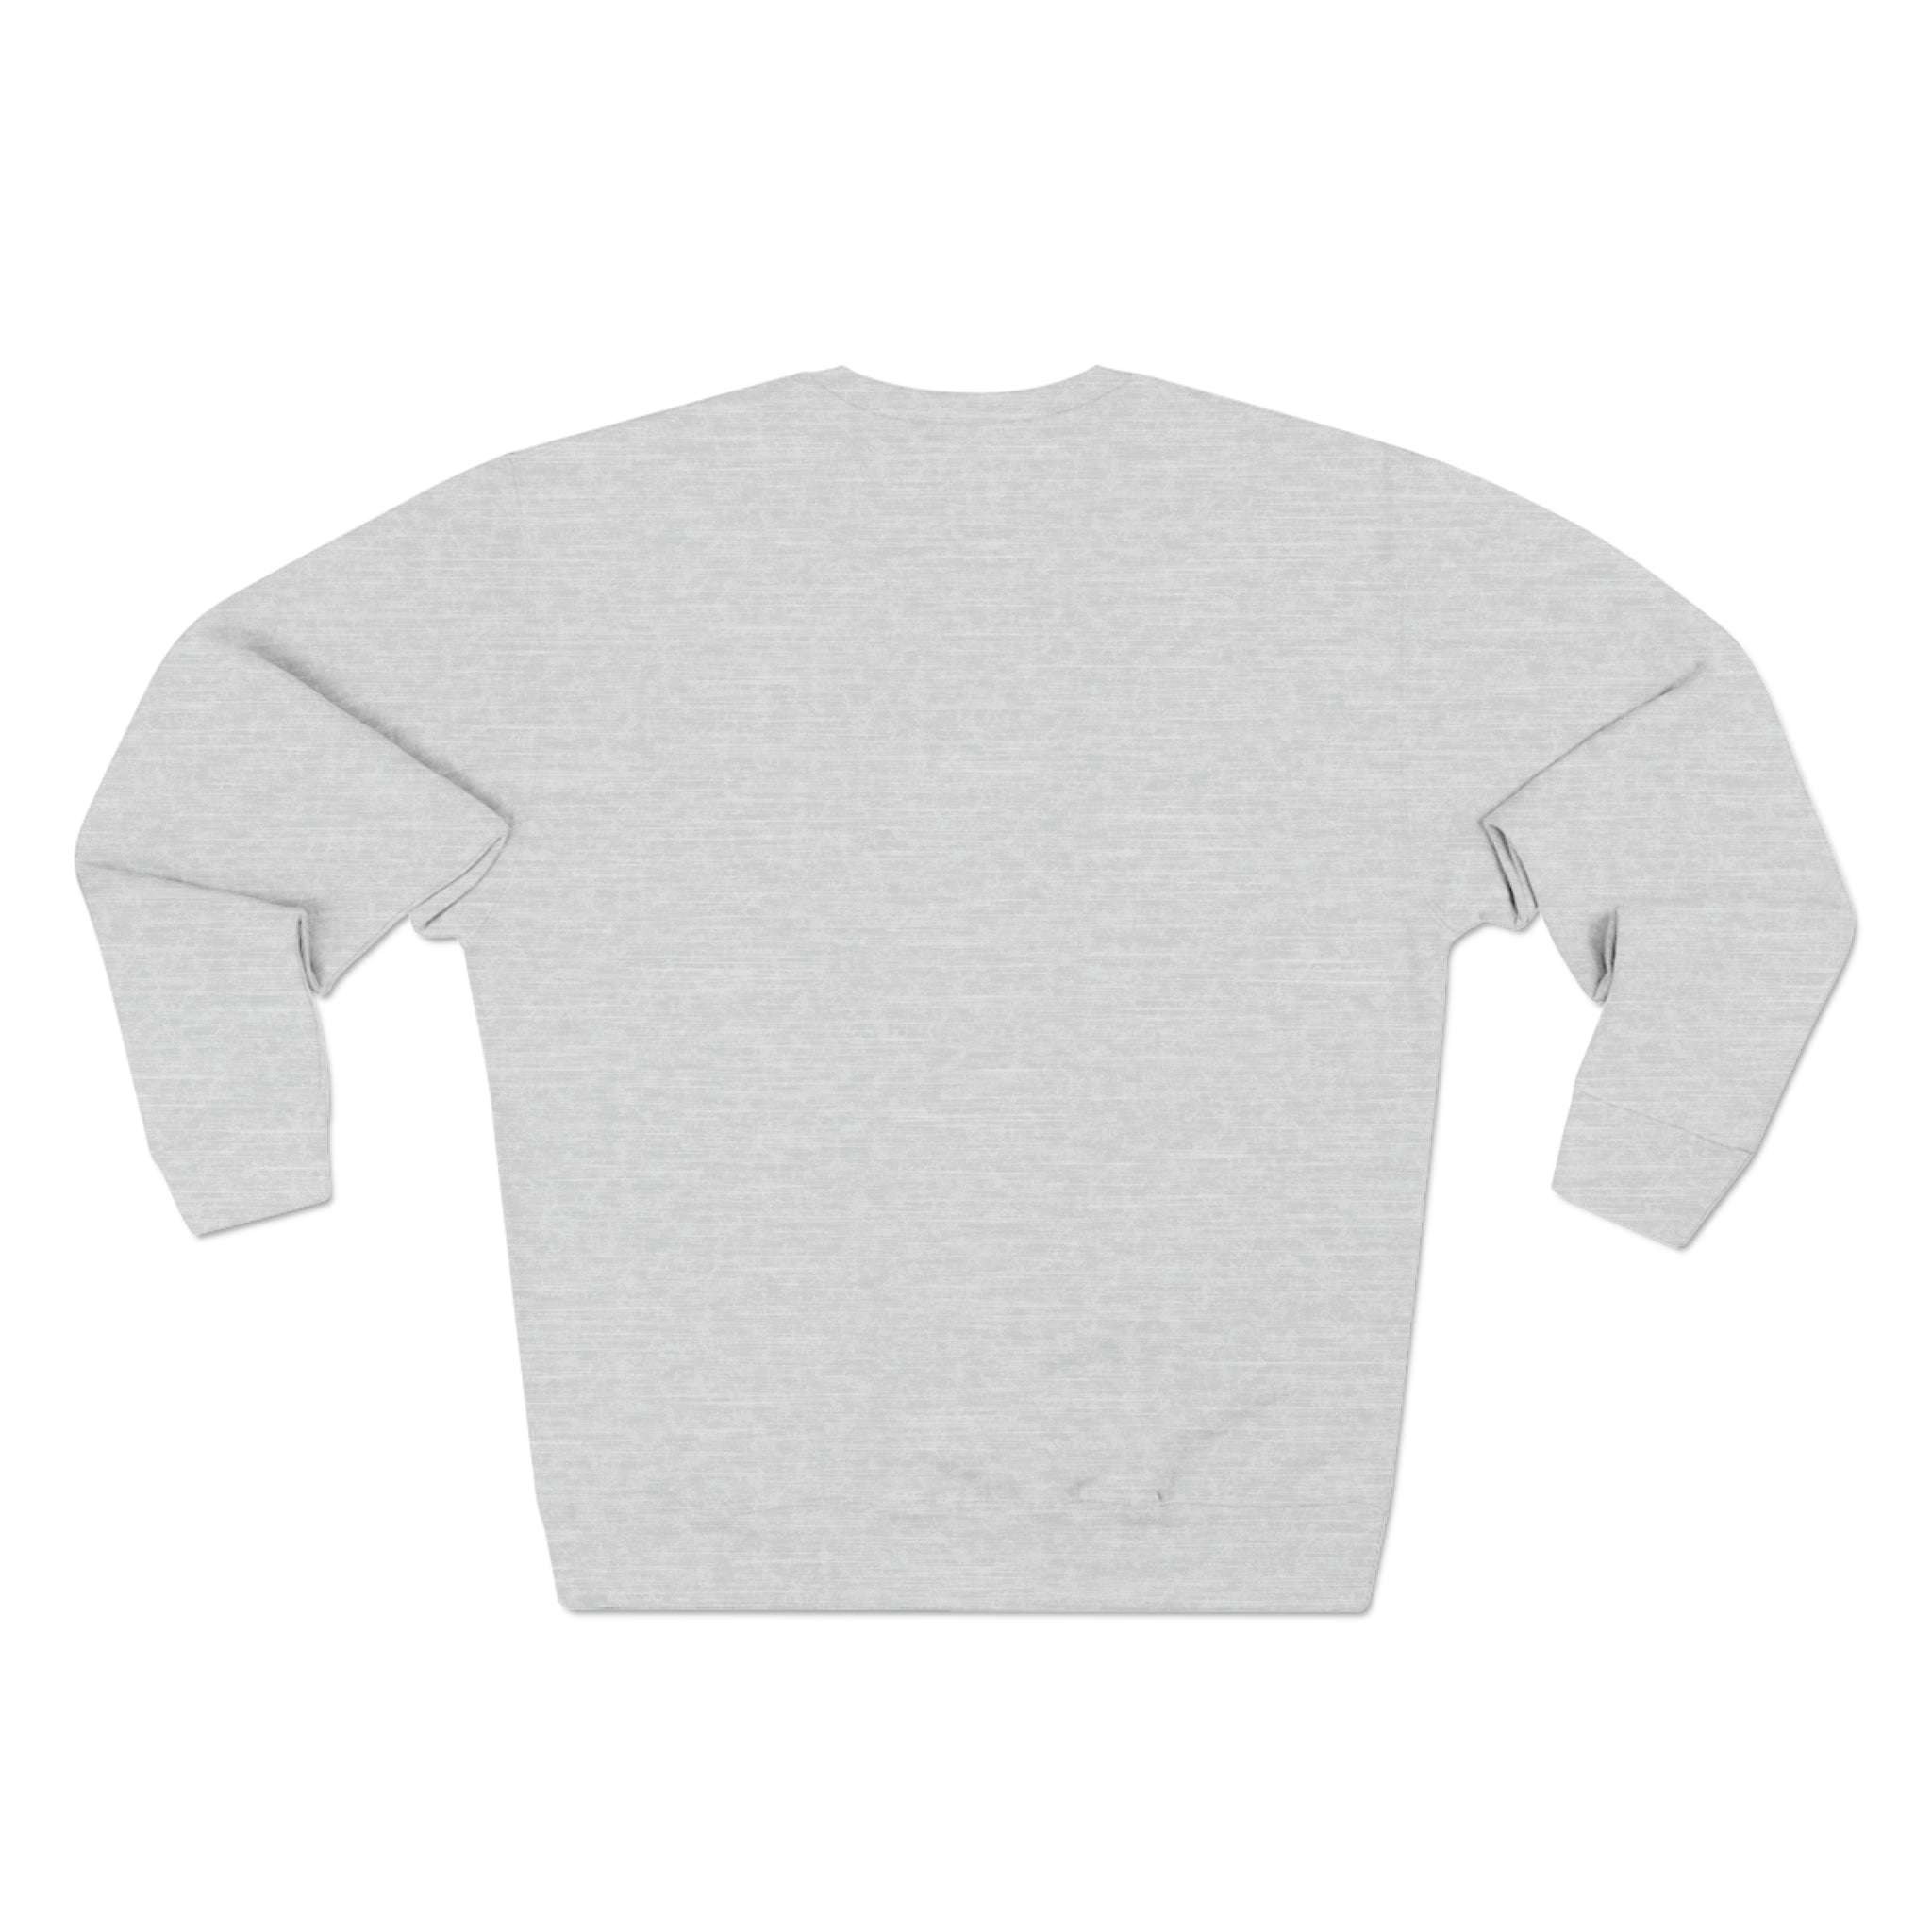 PPYQ® Original Unisex Premium Crewneck Sweatshirt